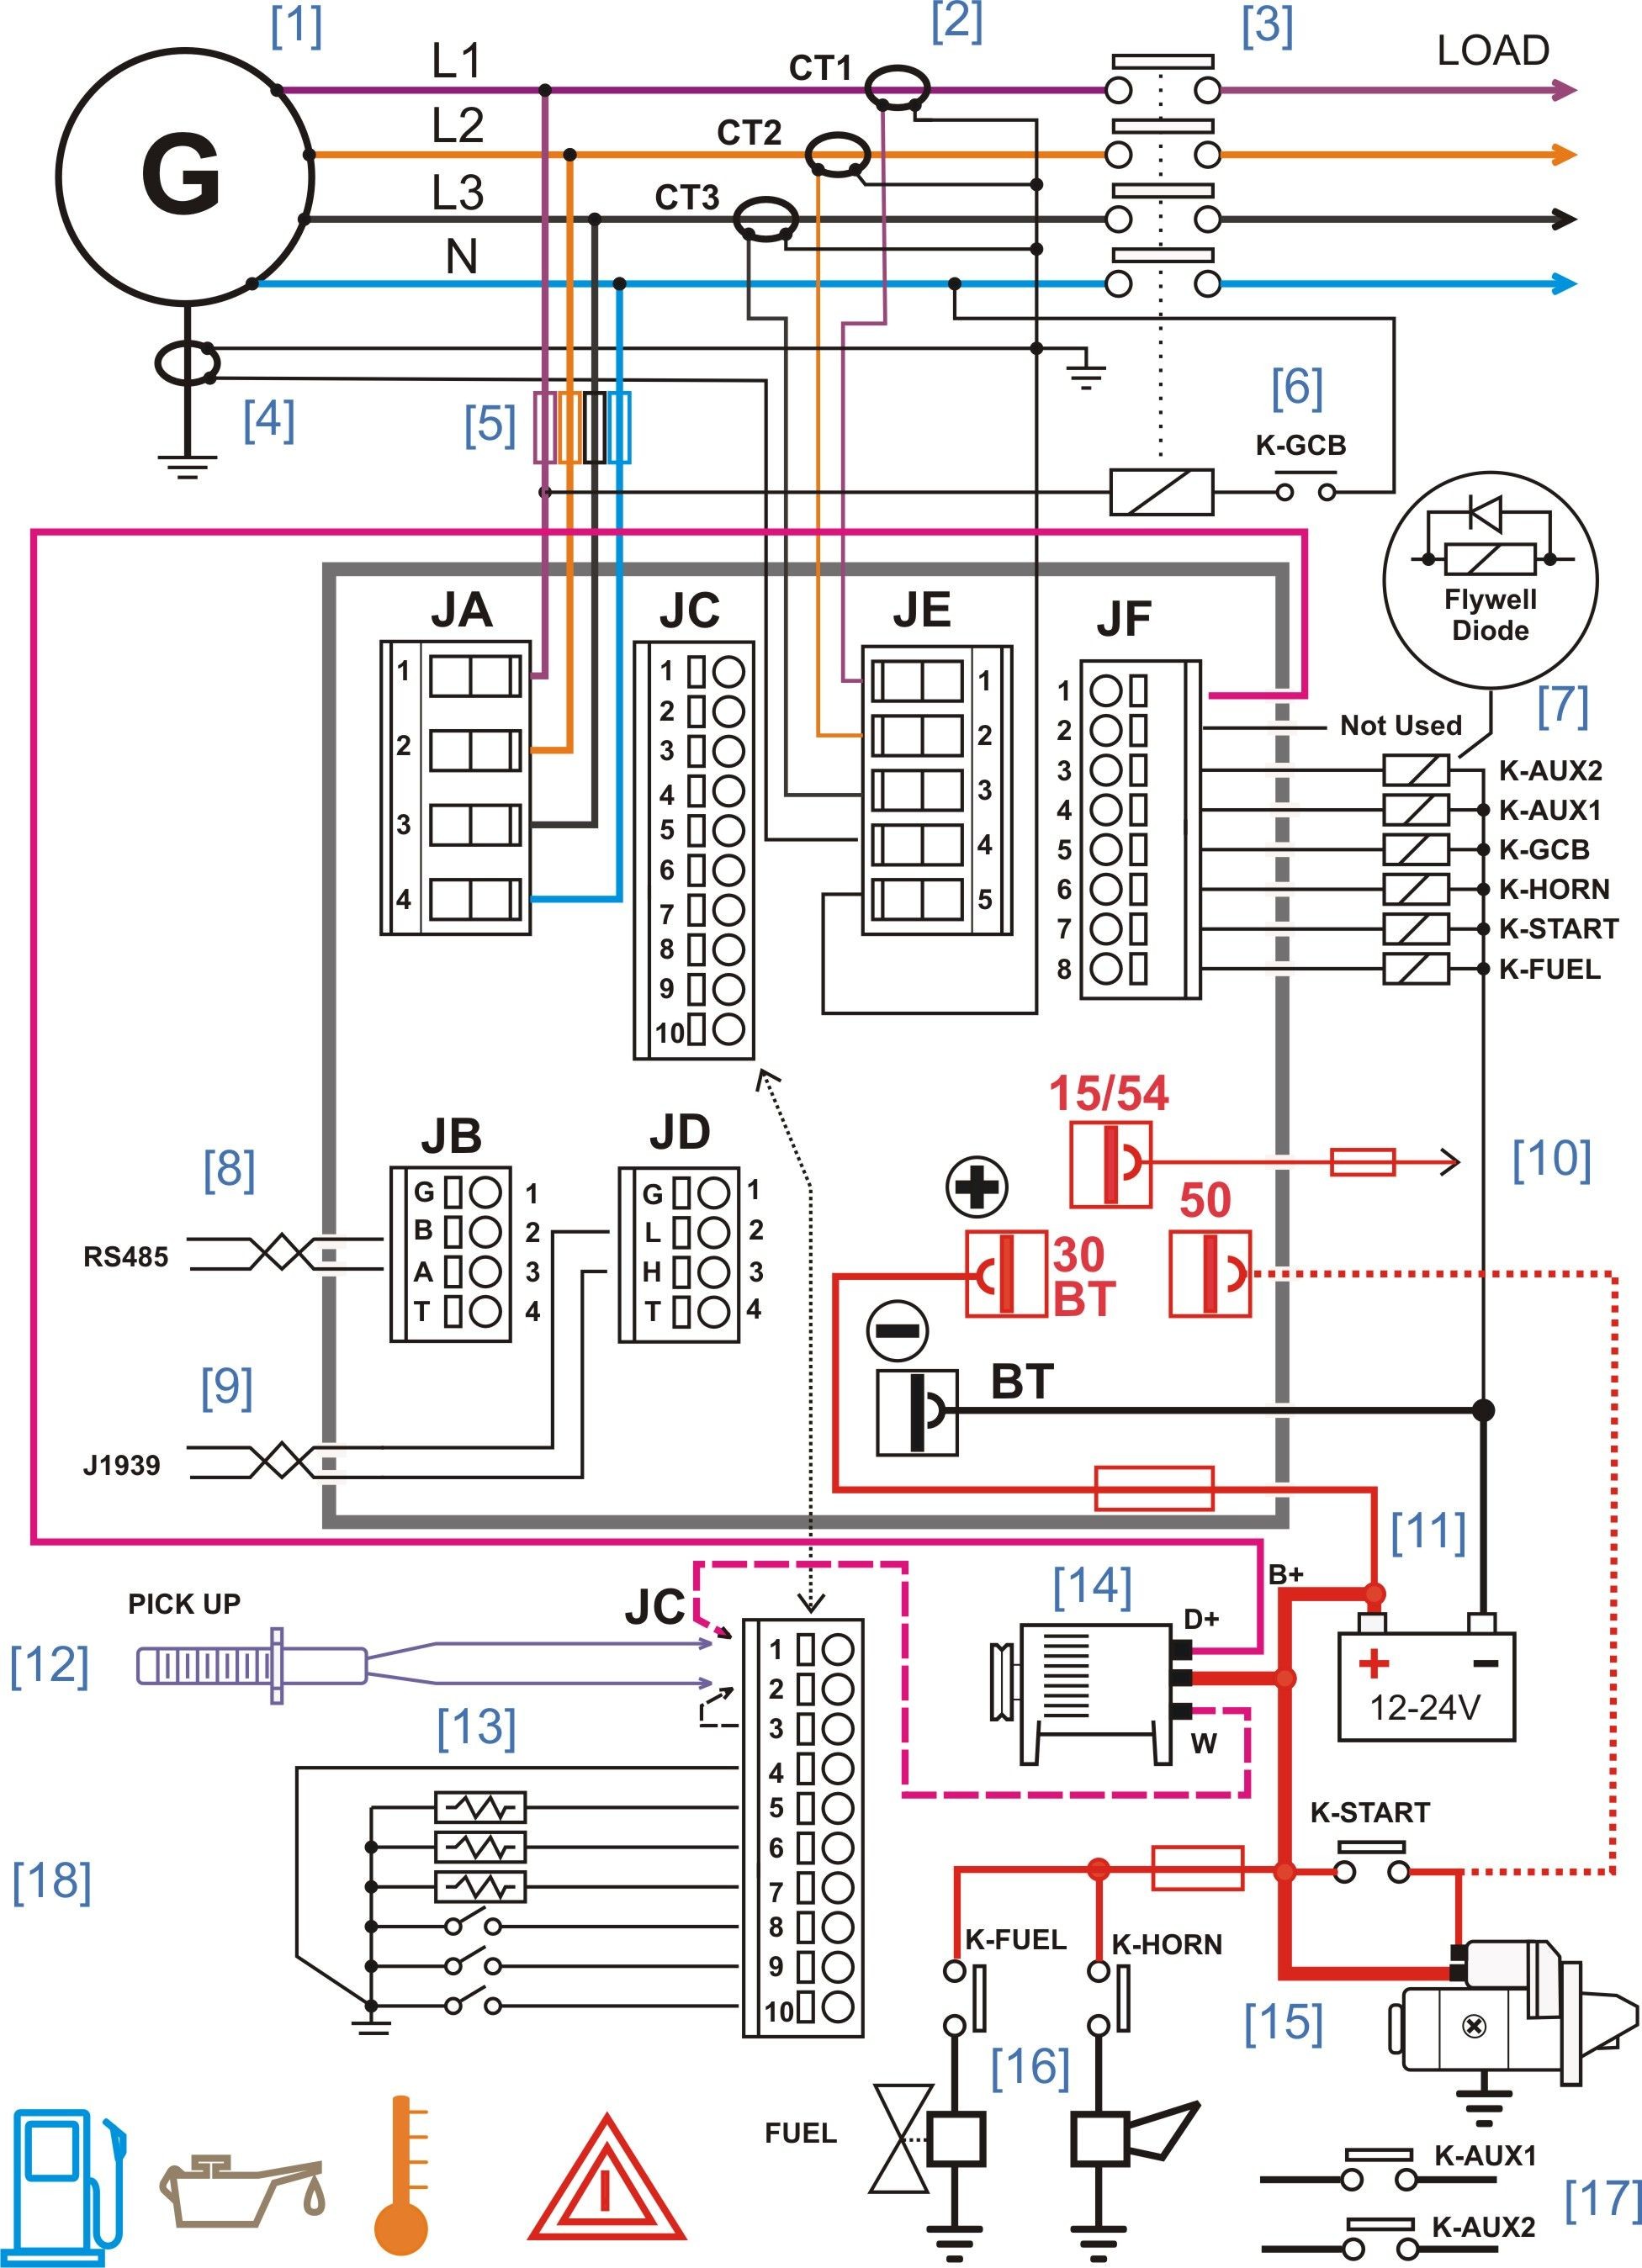 Bike Wiring Diagram Diesel Generator Control Panel Wiring Diagram Of Bike Wiring Diagram